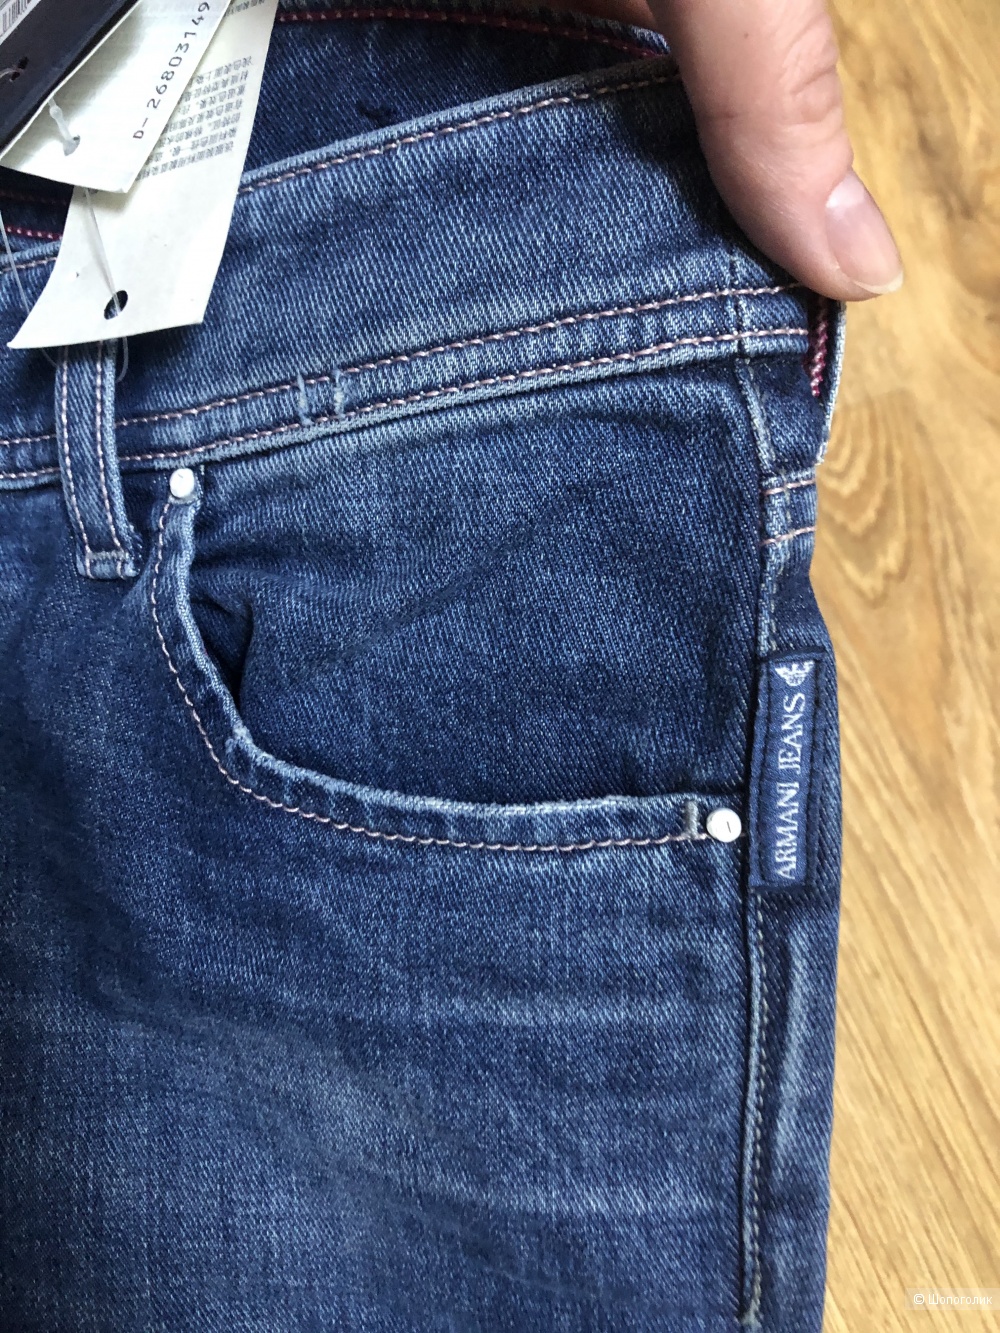 Джинсы Armani Jeans размер 27